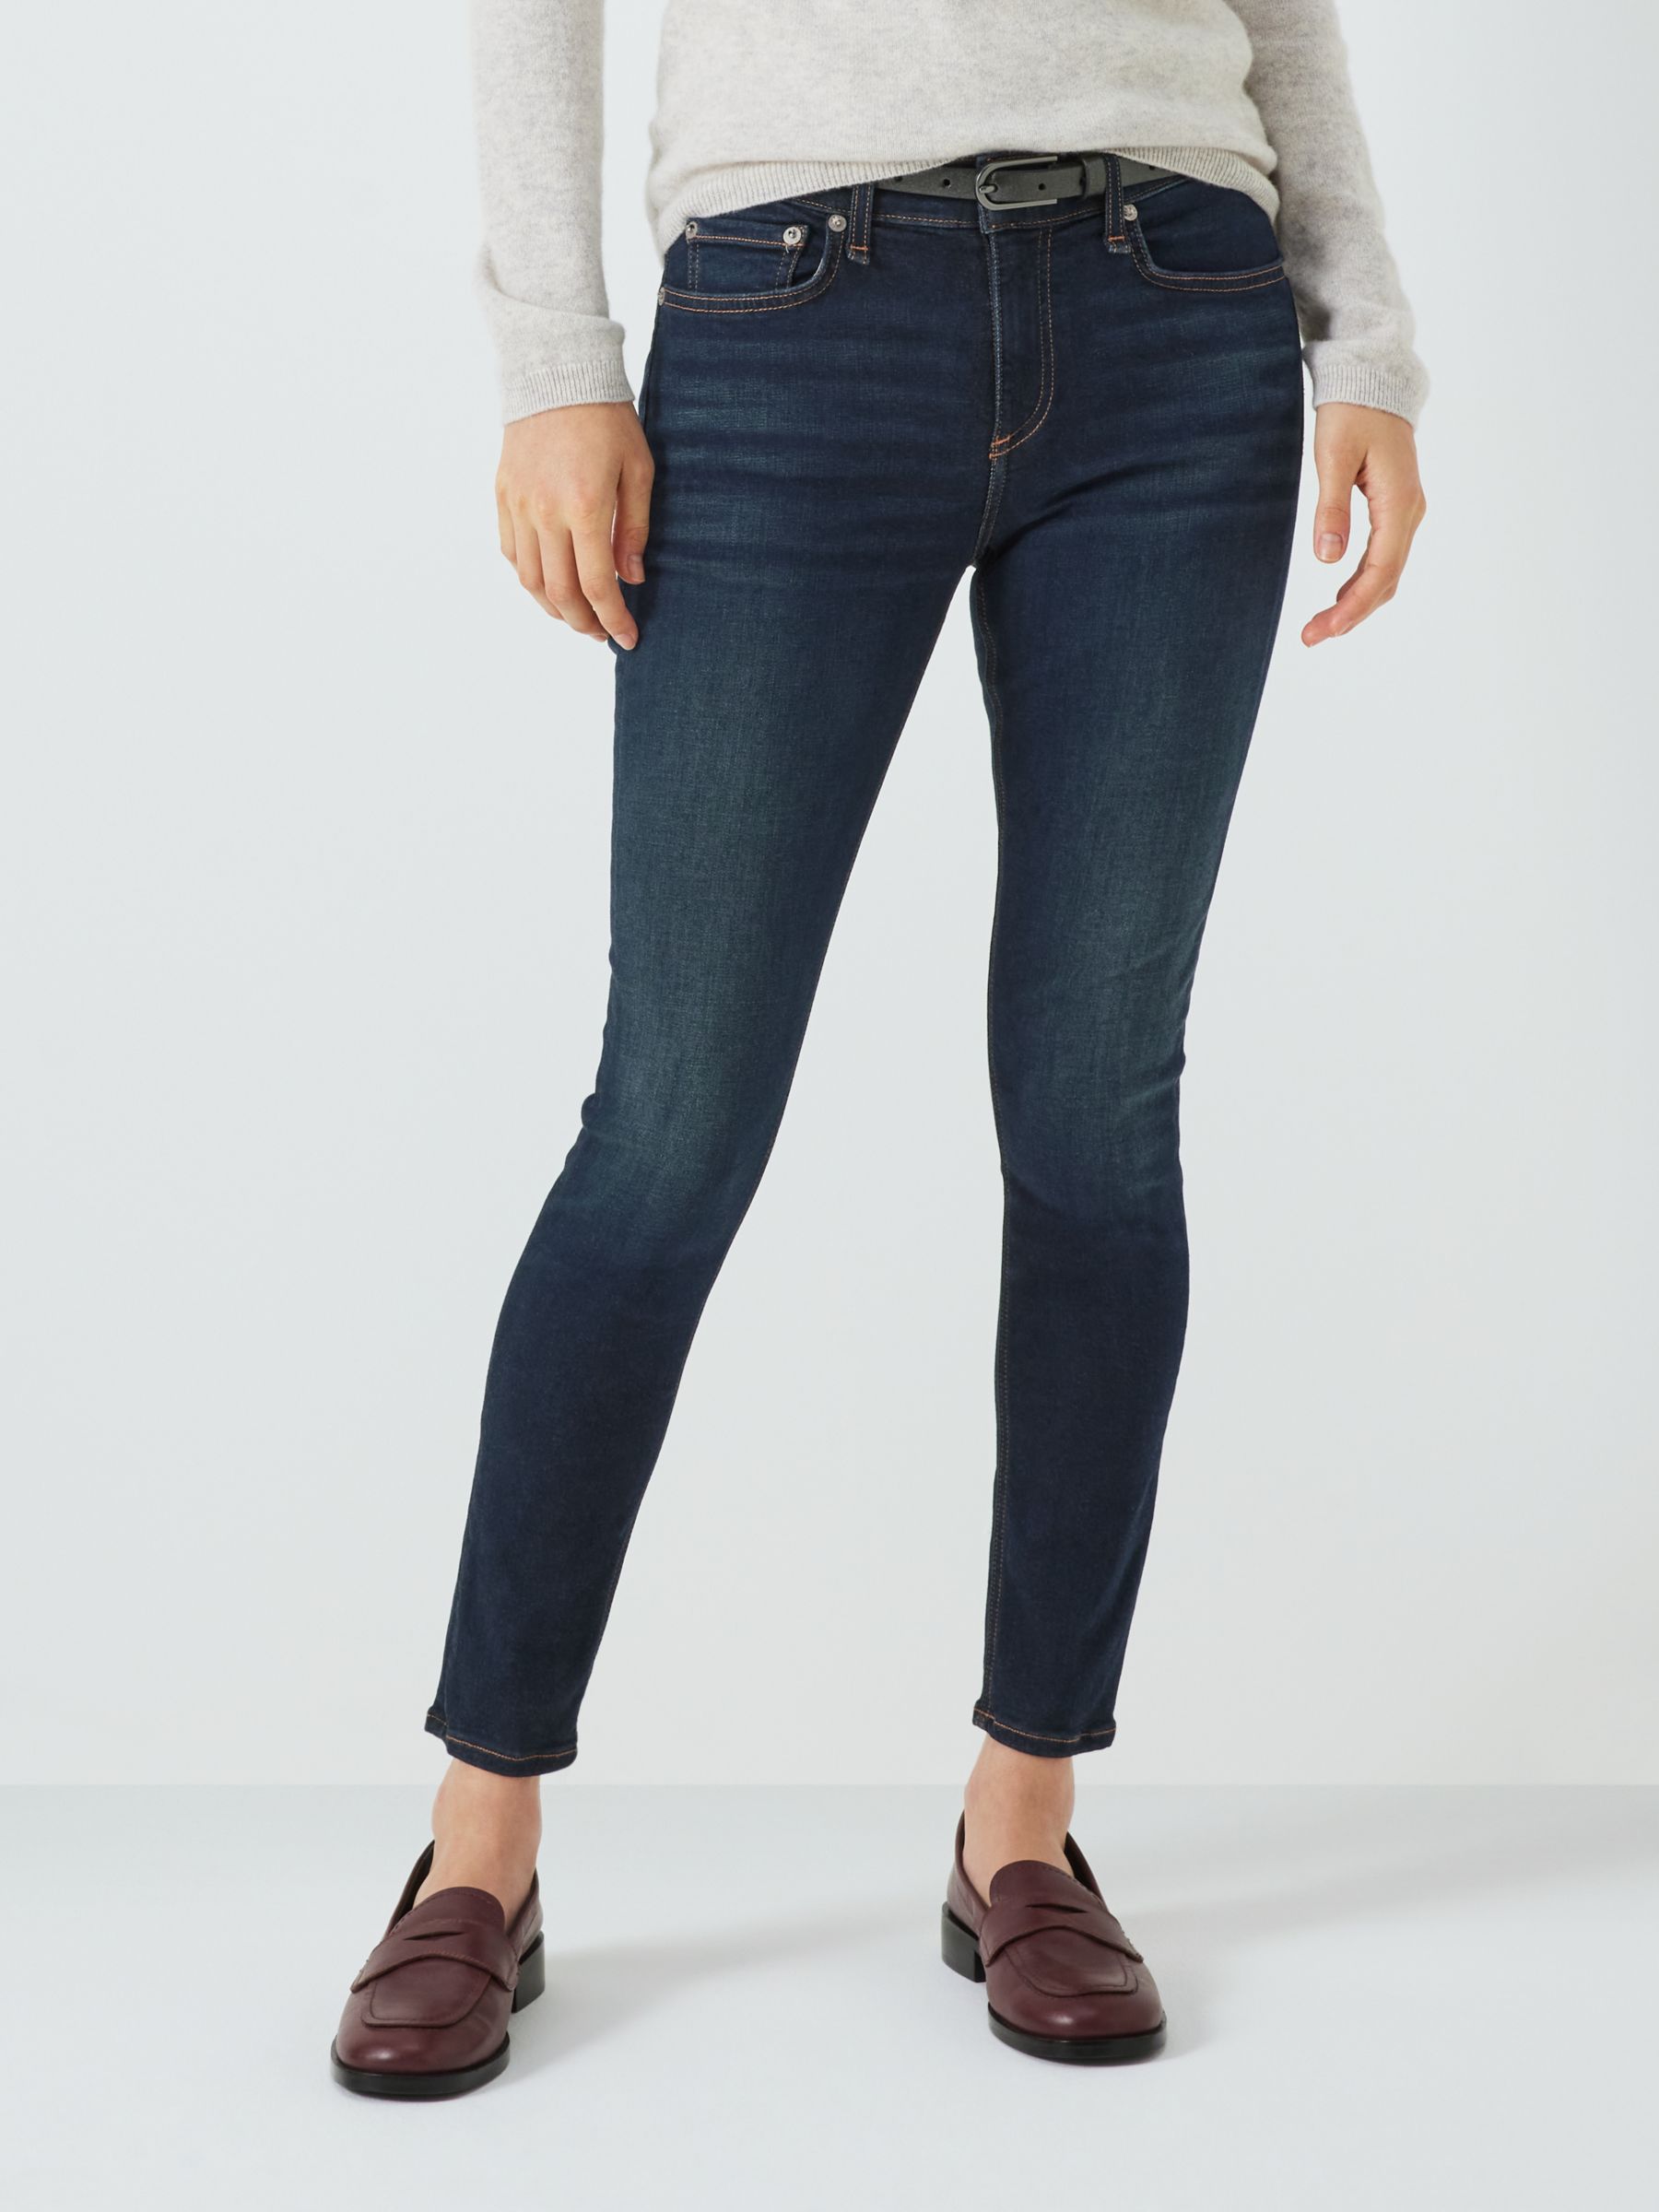 rag & bone Cate Skinny Jeans, Carmen, 24